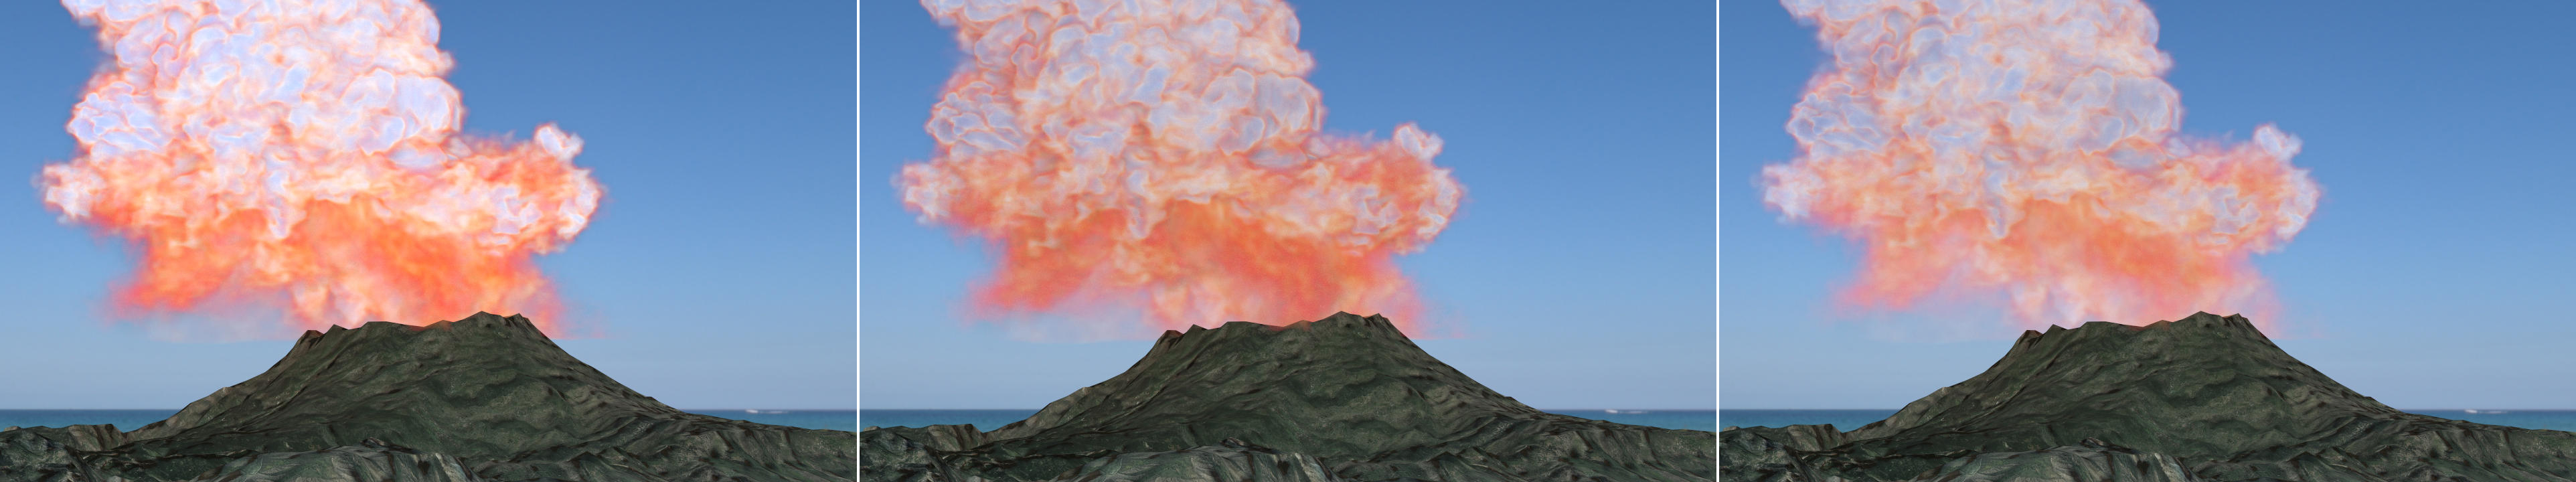 volcano_comparison